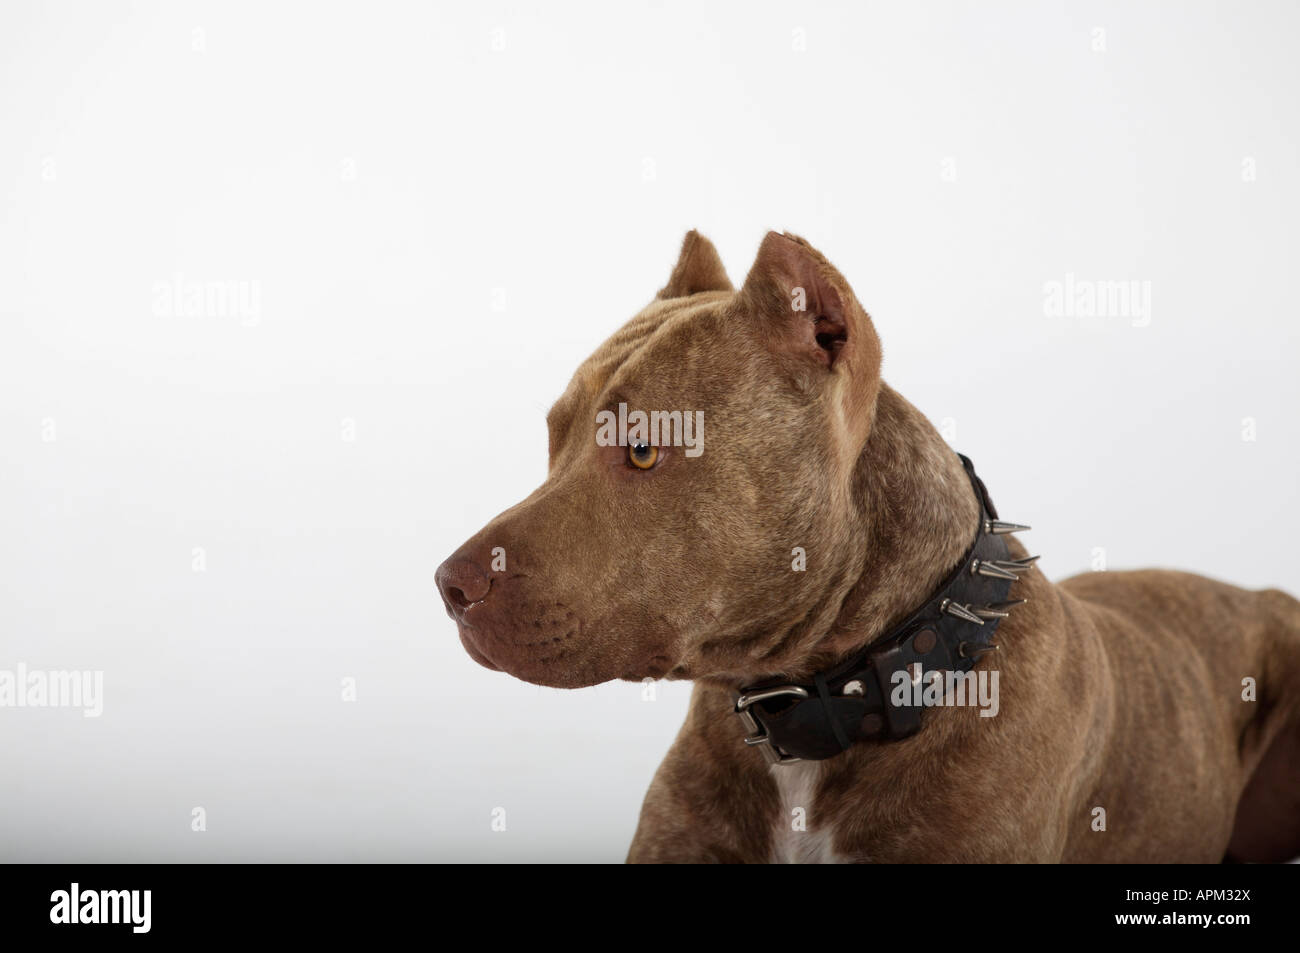 Pitbull dog portrait Stock Photo